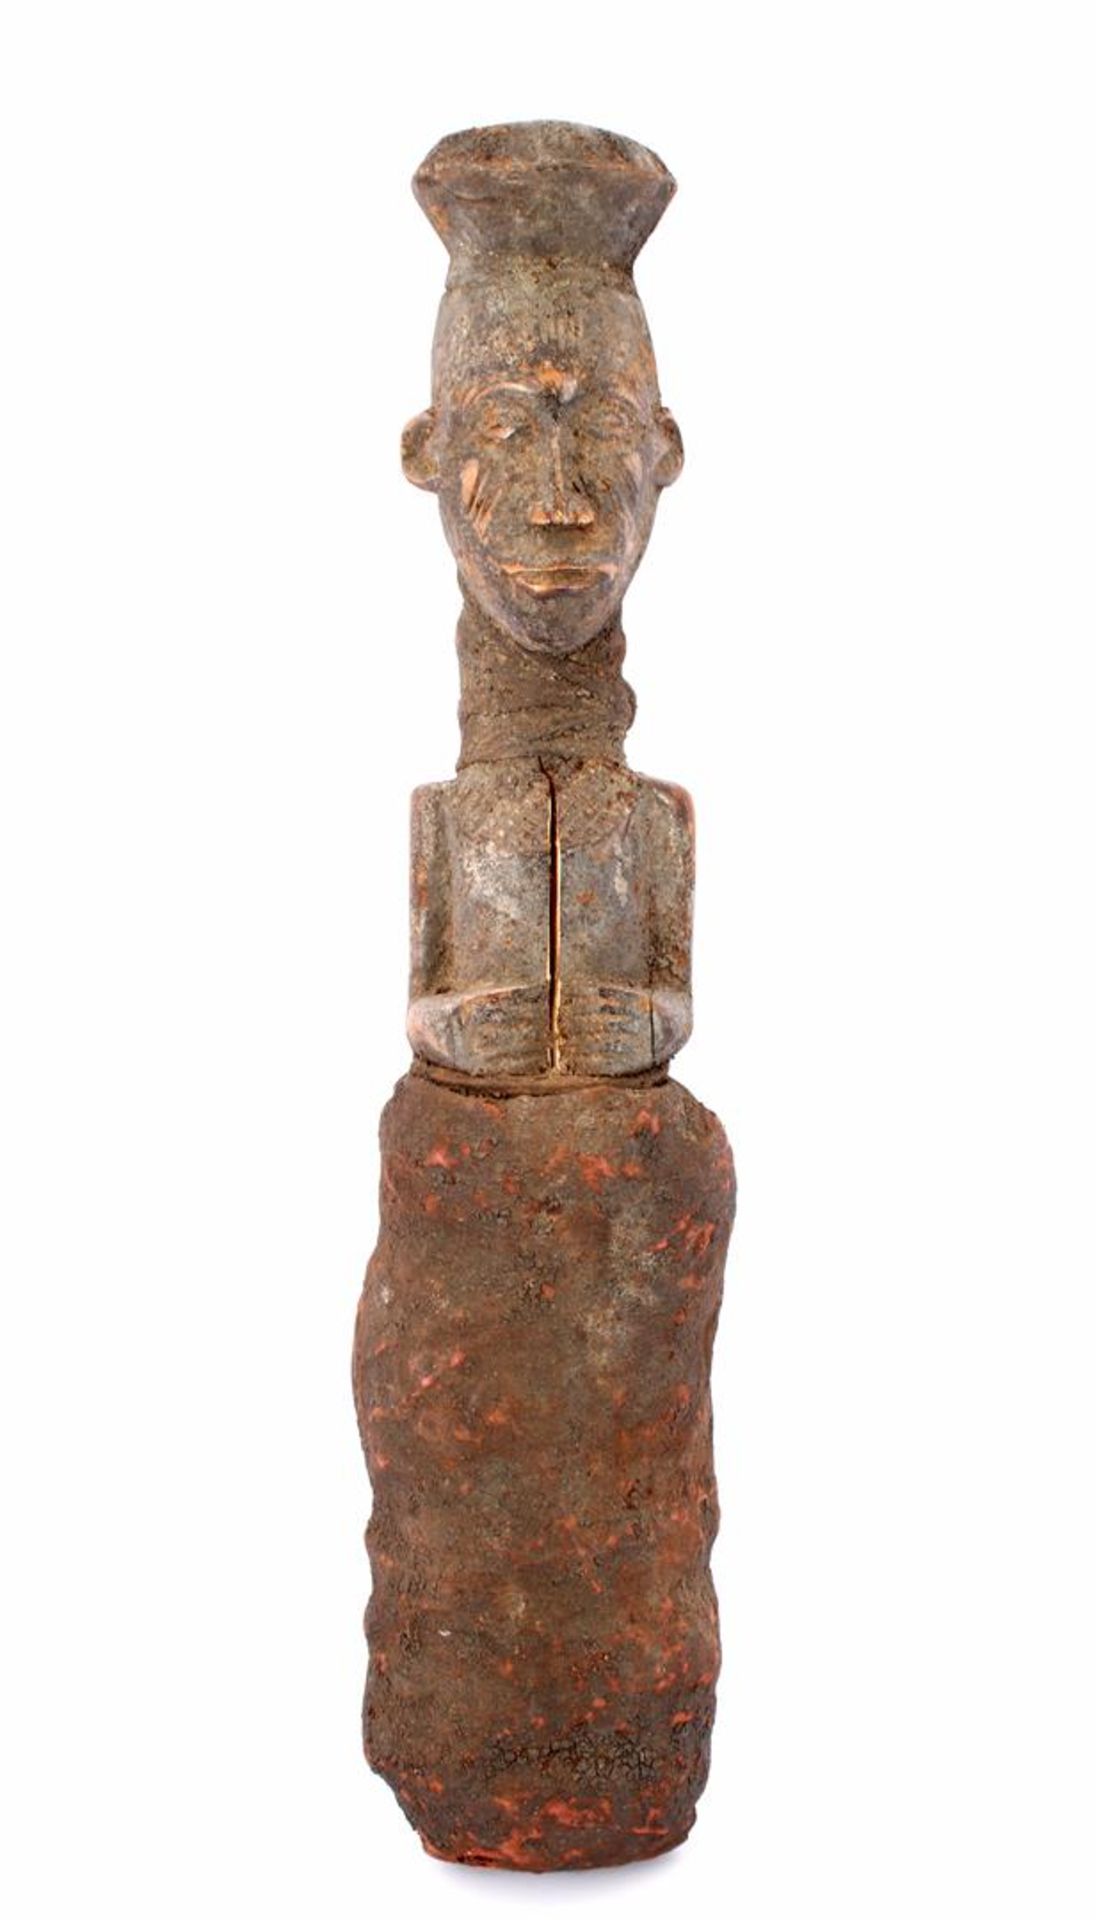 Houten bestoken ritueel beeld van figuur met textiel kleding uit Mali 52 cm hoog (gespleten romp)